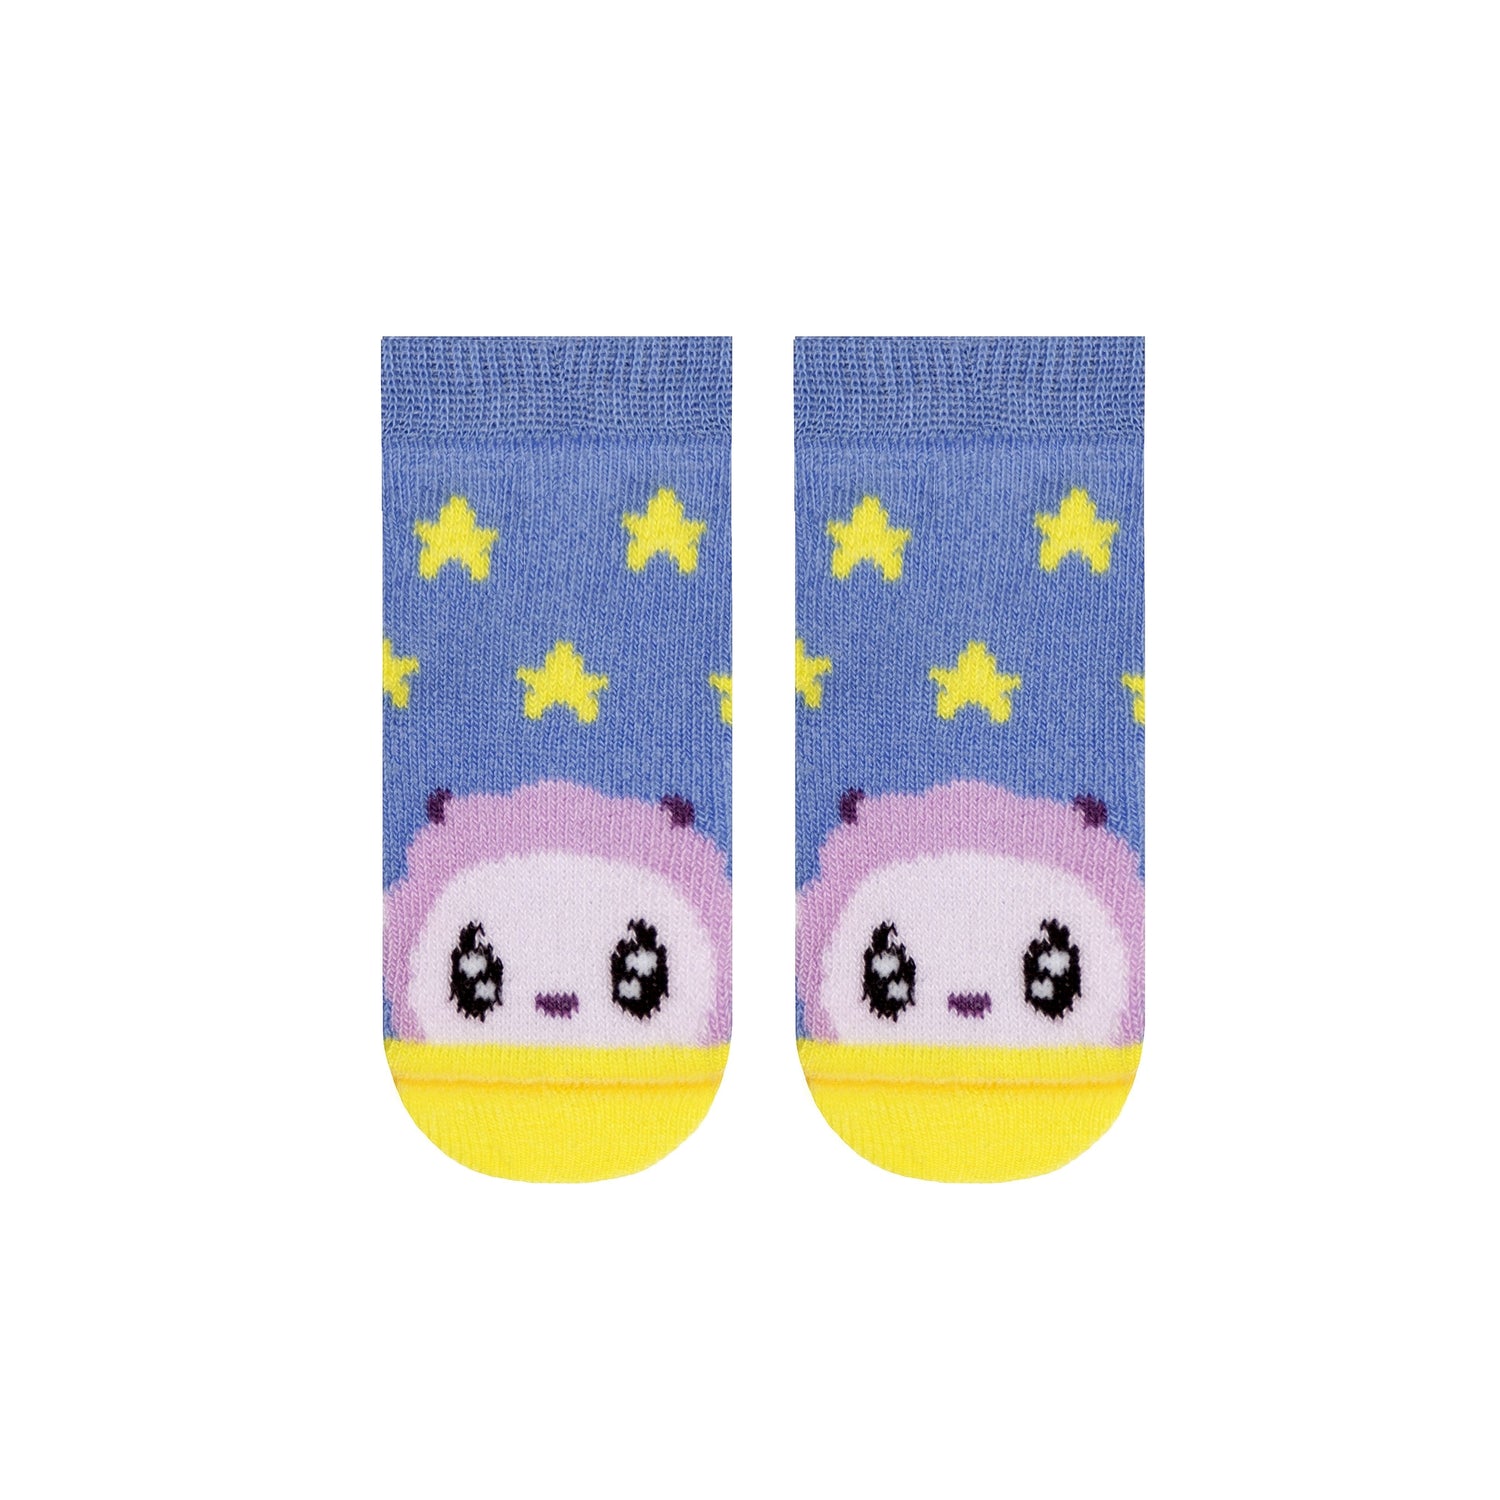 Socks For Boys